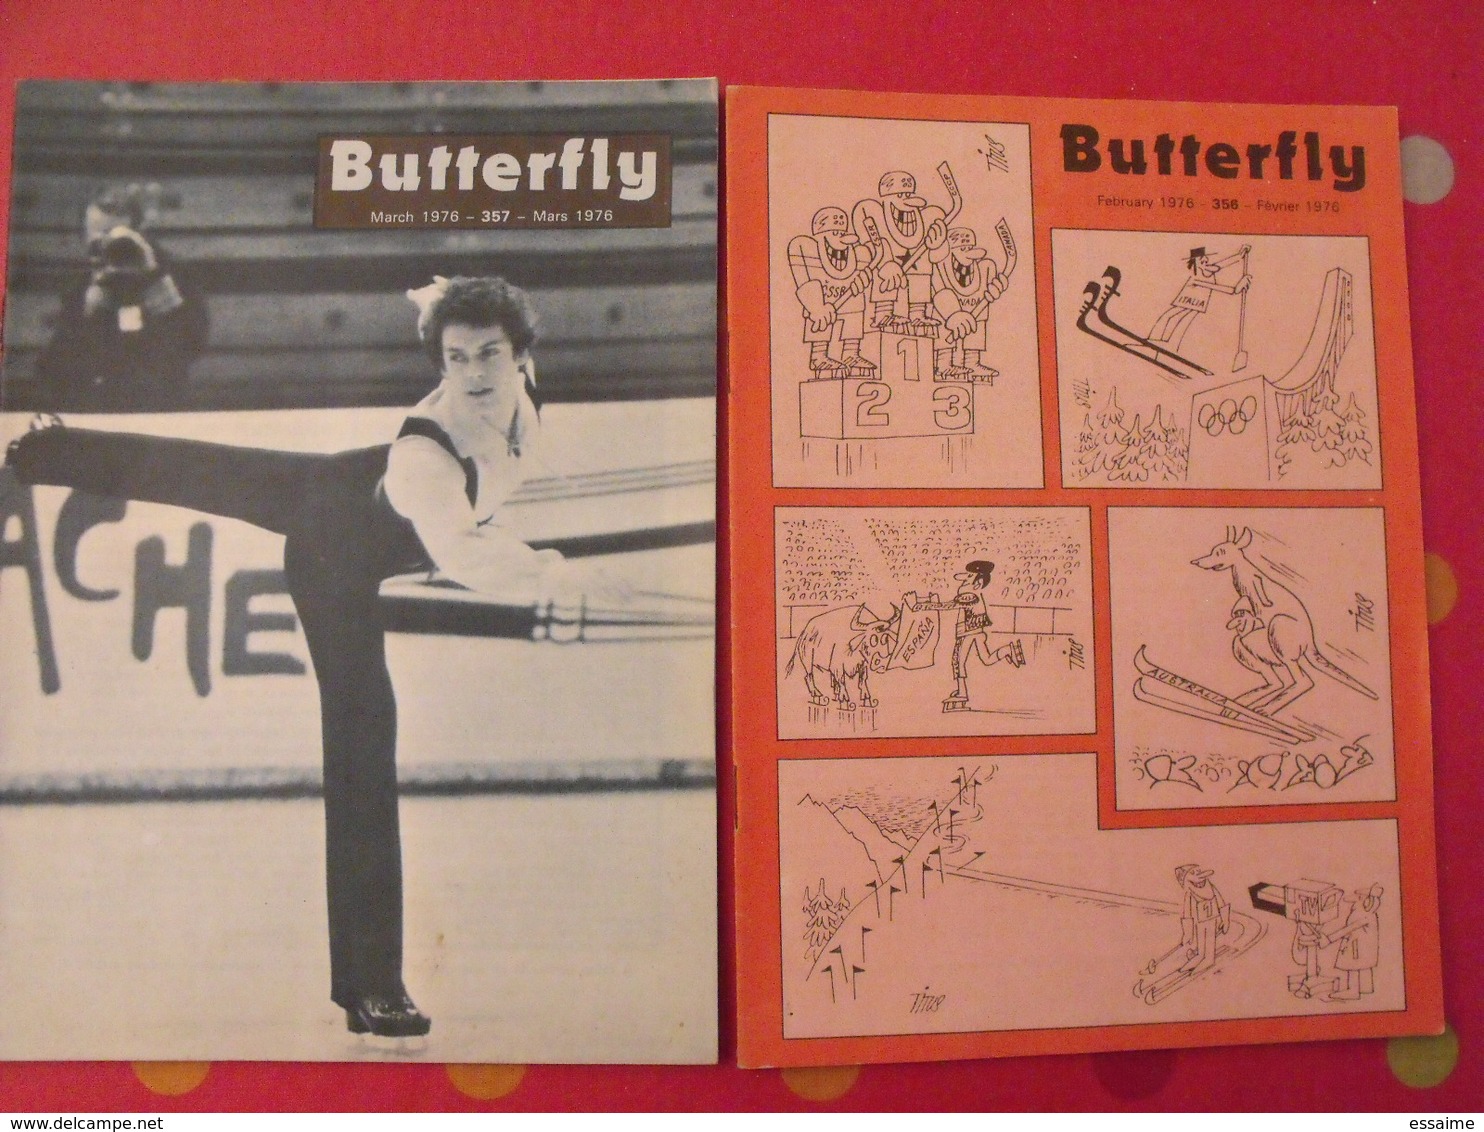 16 revues butterfly, English-French Magazine. revue pédagogique1963-1976